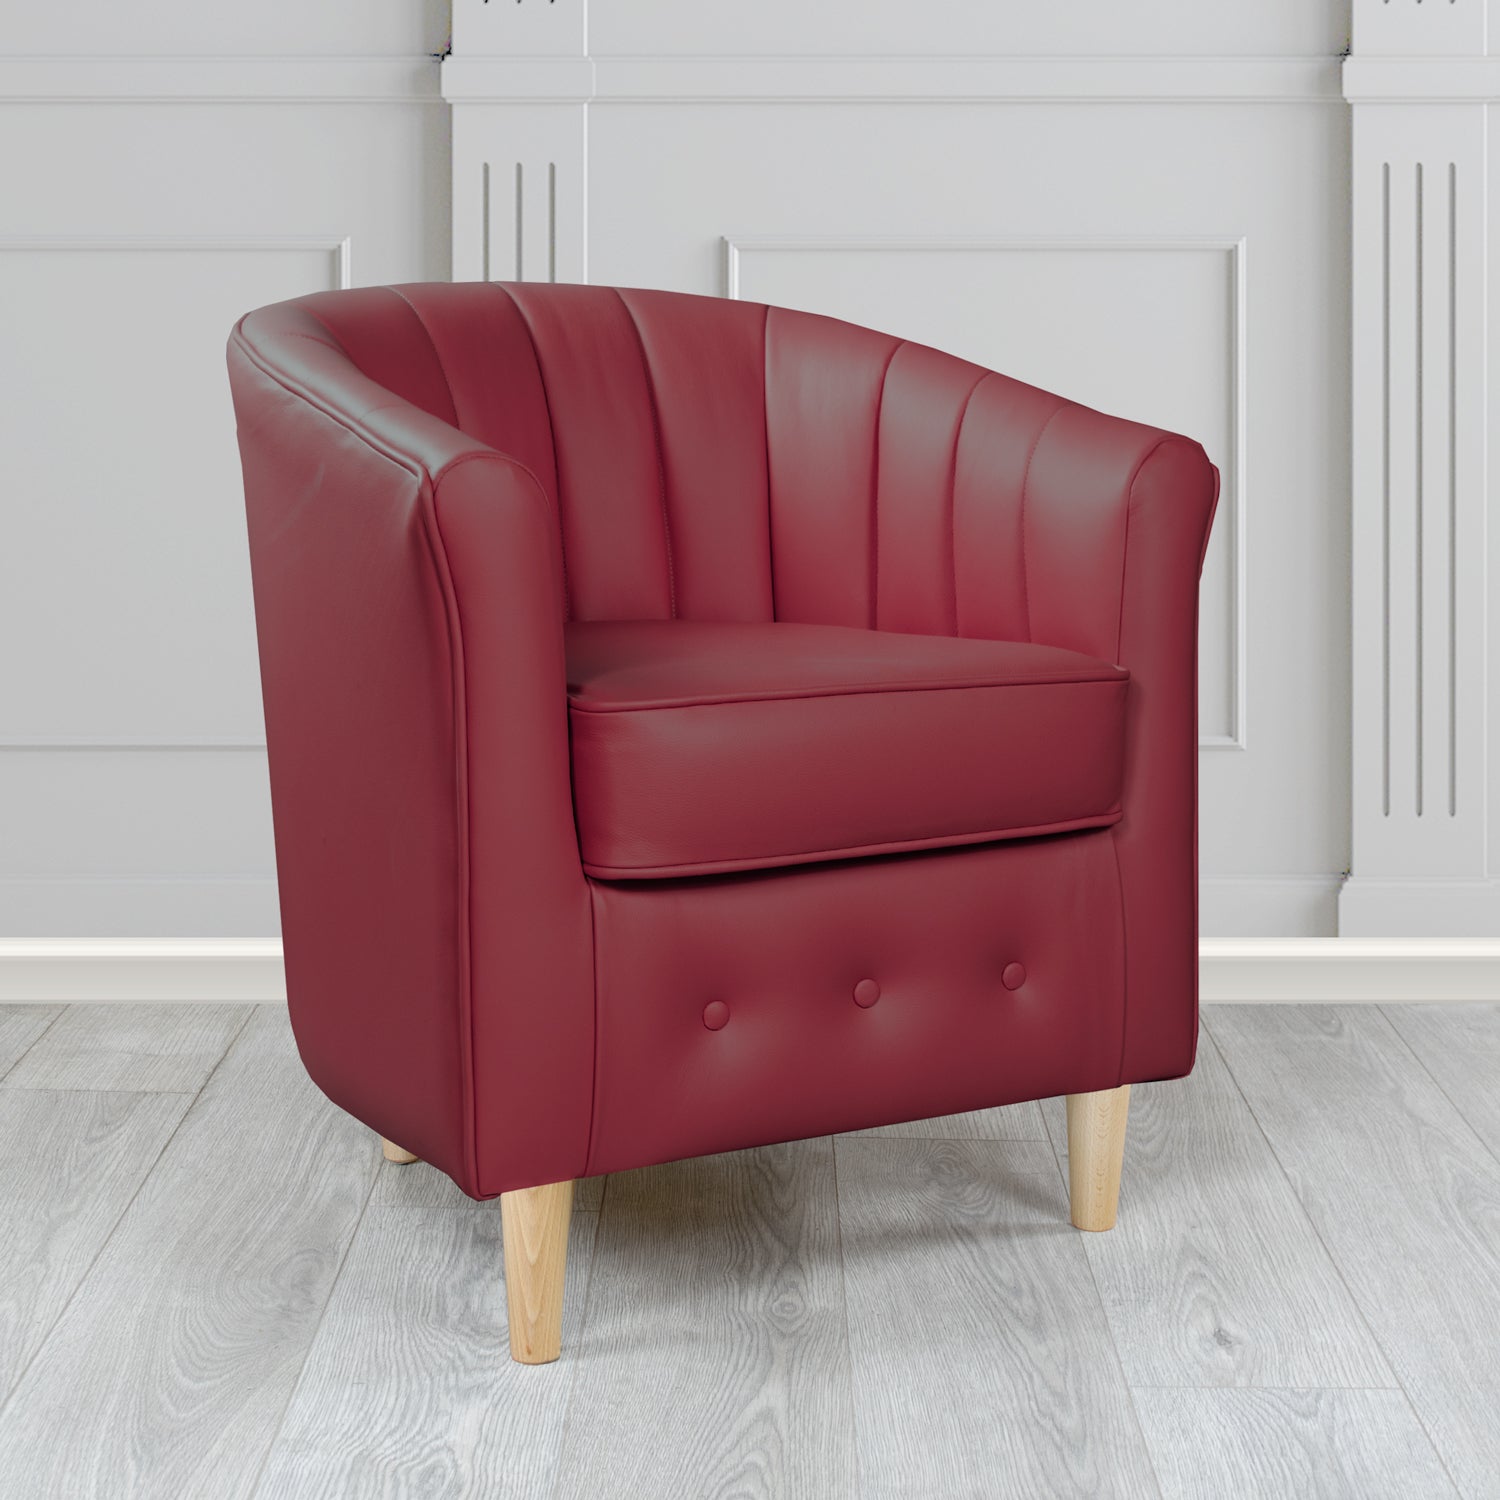 Doha Tub Chair in Vele Ruby Crib 5 Genuine Leather